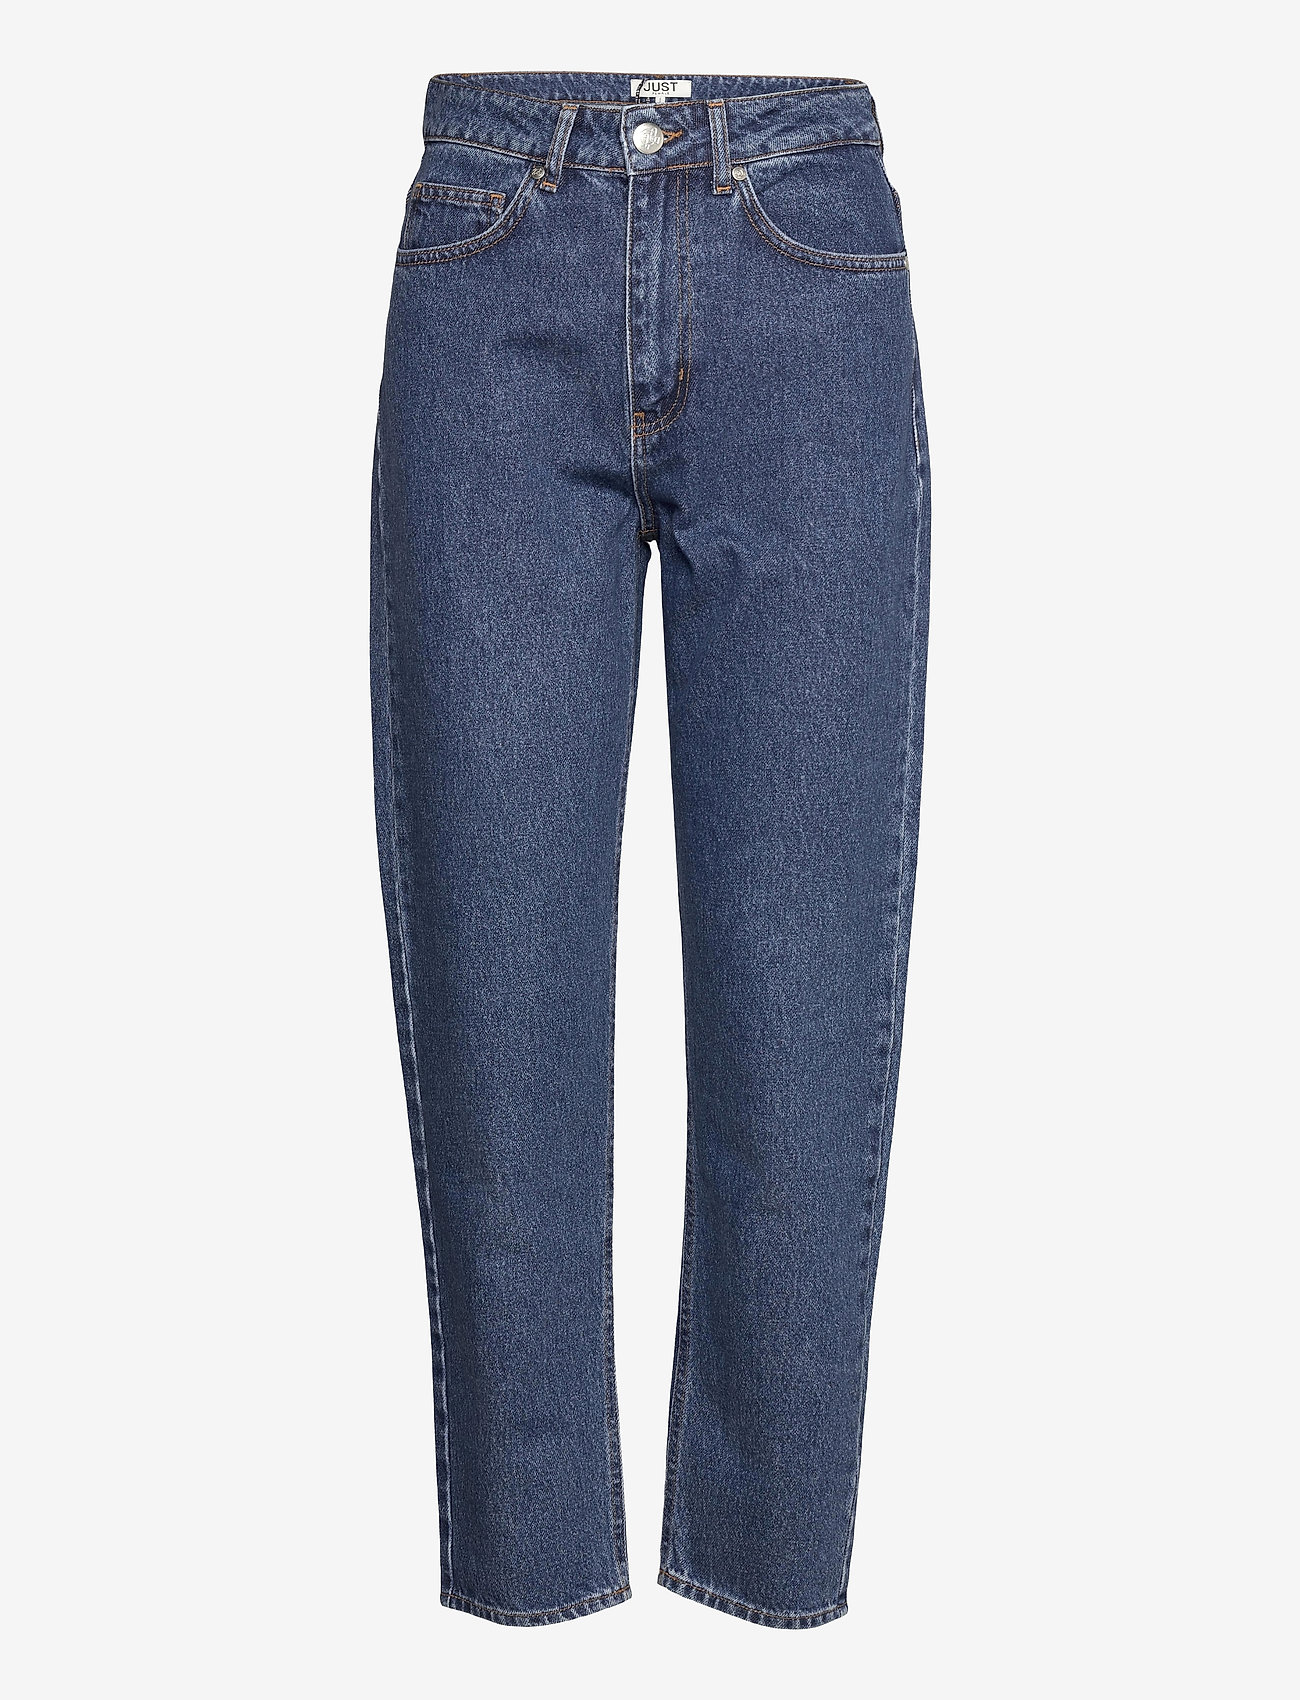 Just Female - Stormy jeans 0102 - tiesaus kirpimo džinsai - middle blue - 0